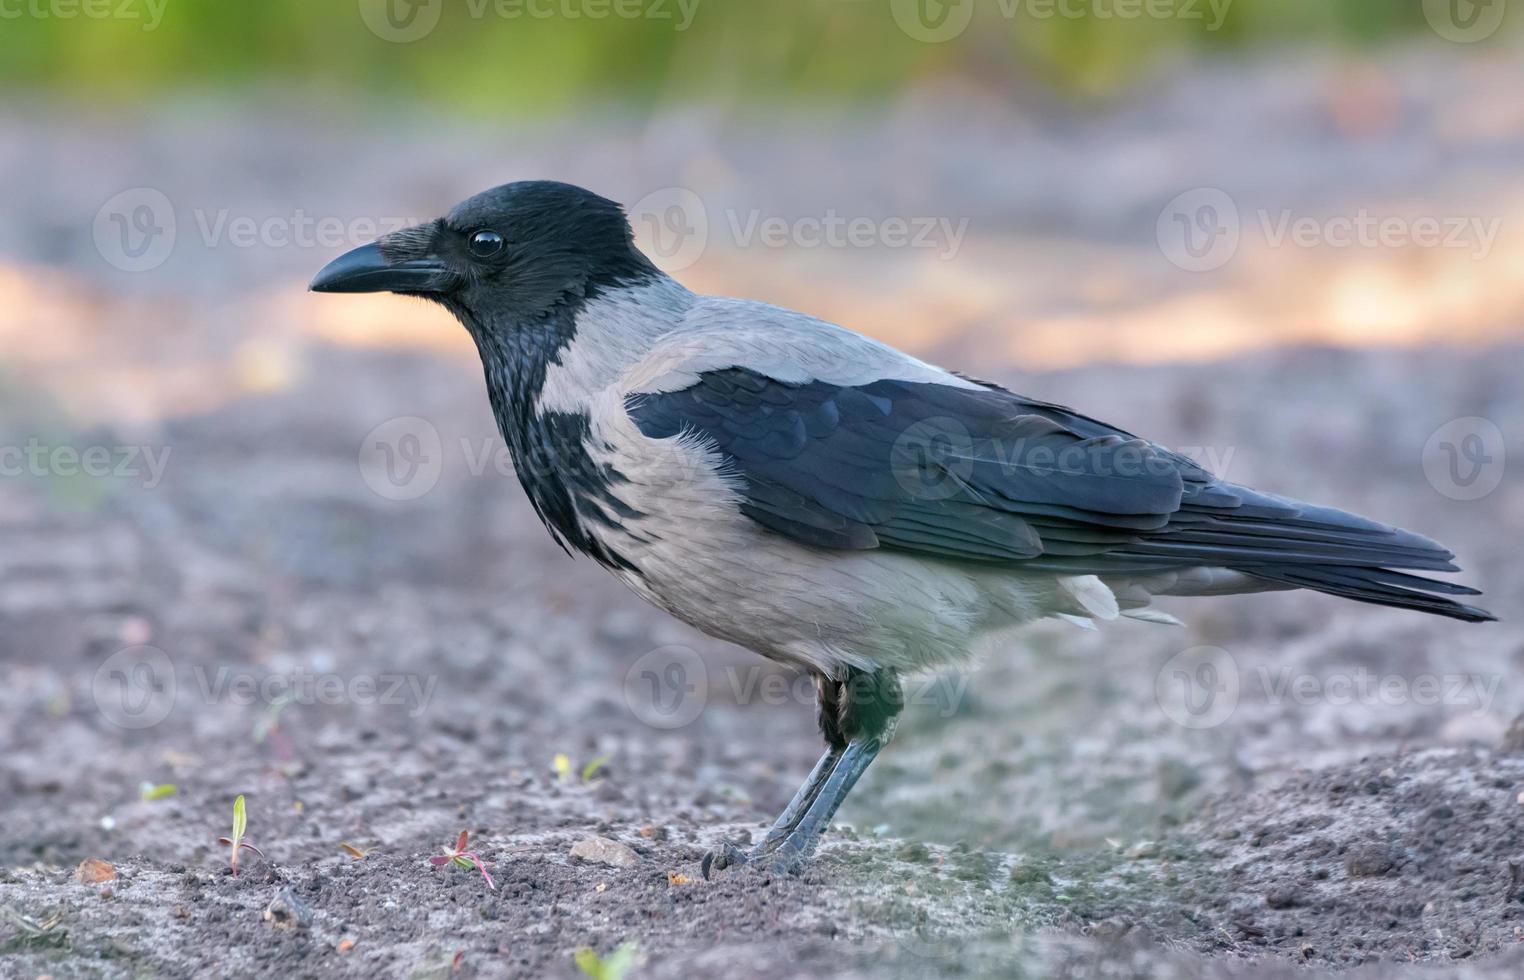 volwassen met een kap kraai - corvus cornix - staat Aan bodem grond in voorjaar ochtend- foto